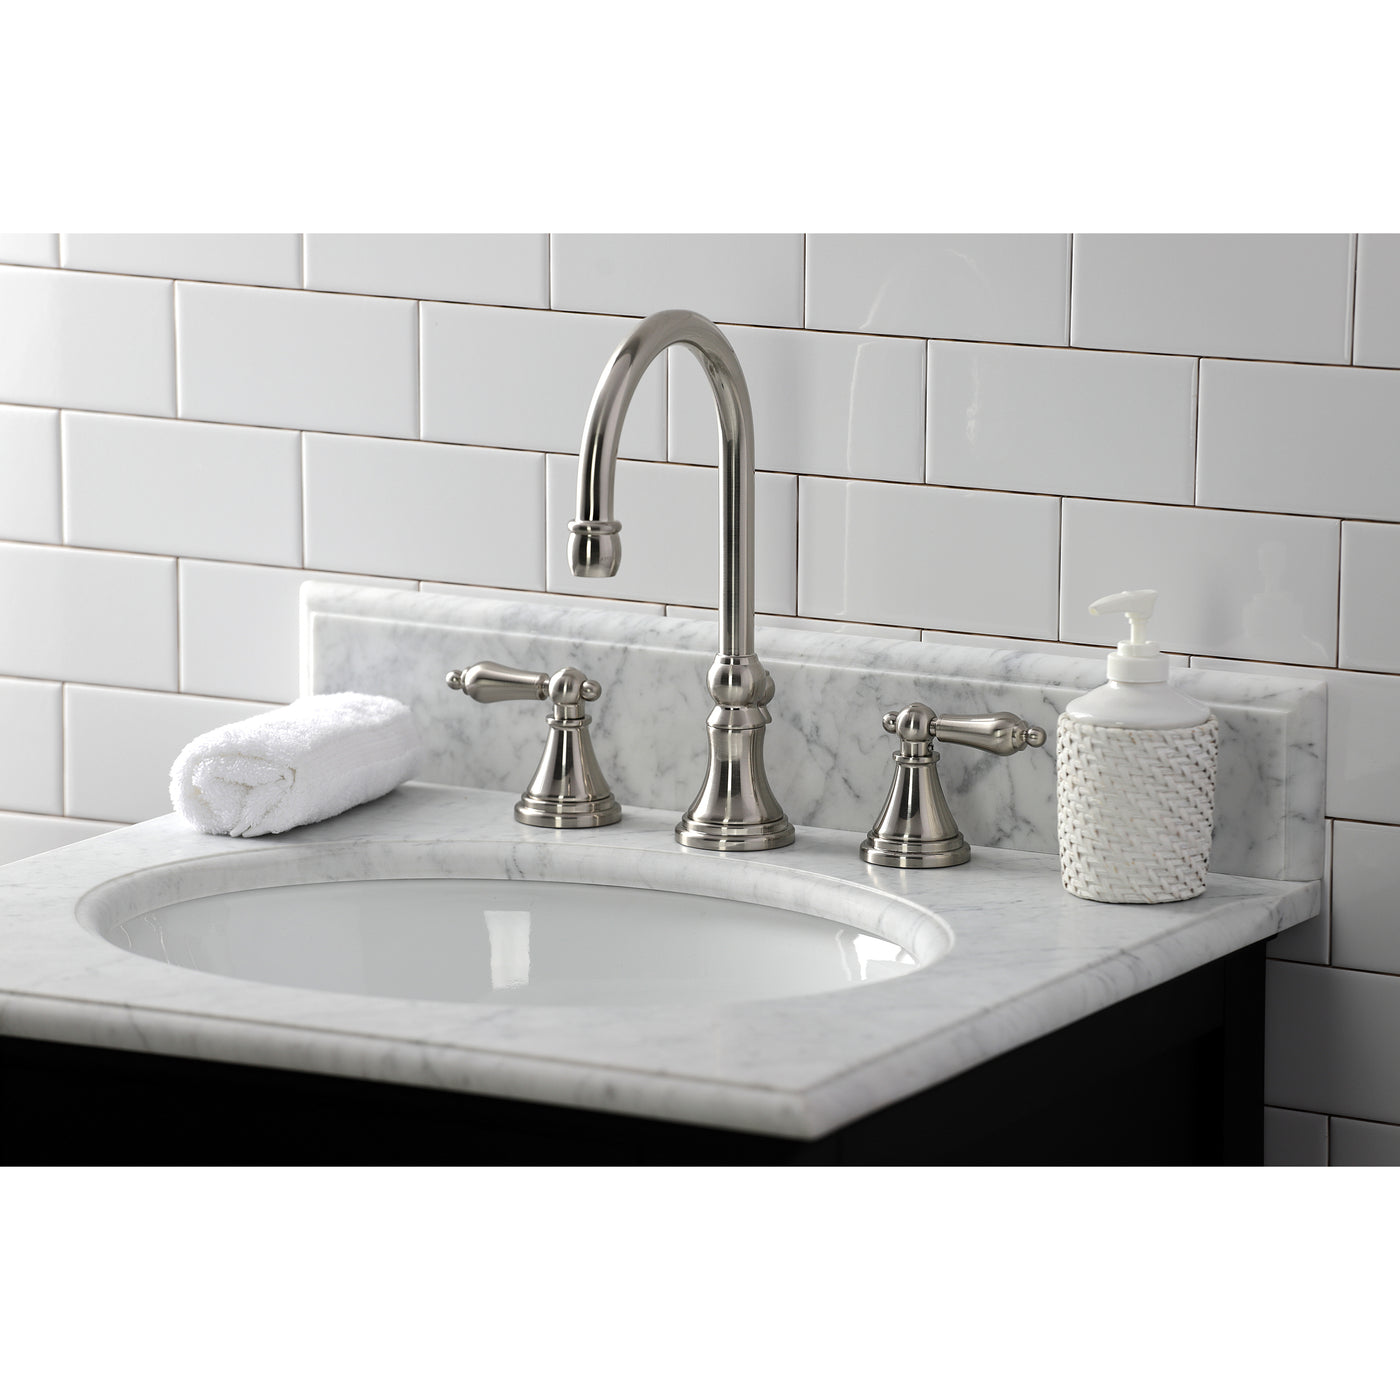 Elements of Design ES2988AL Widespread Bathroom Faucet, Brushed Nickel